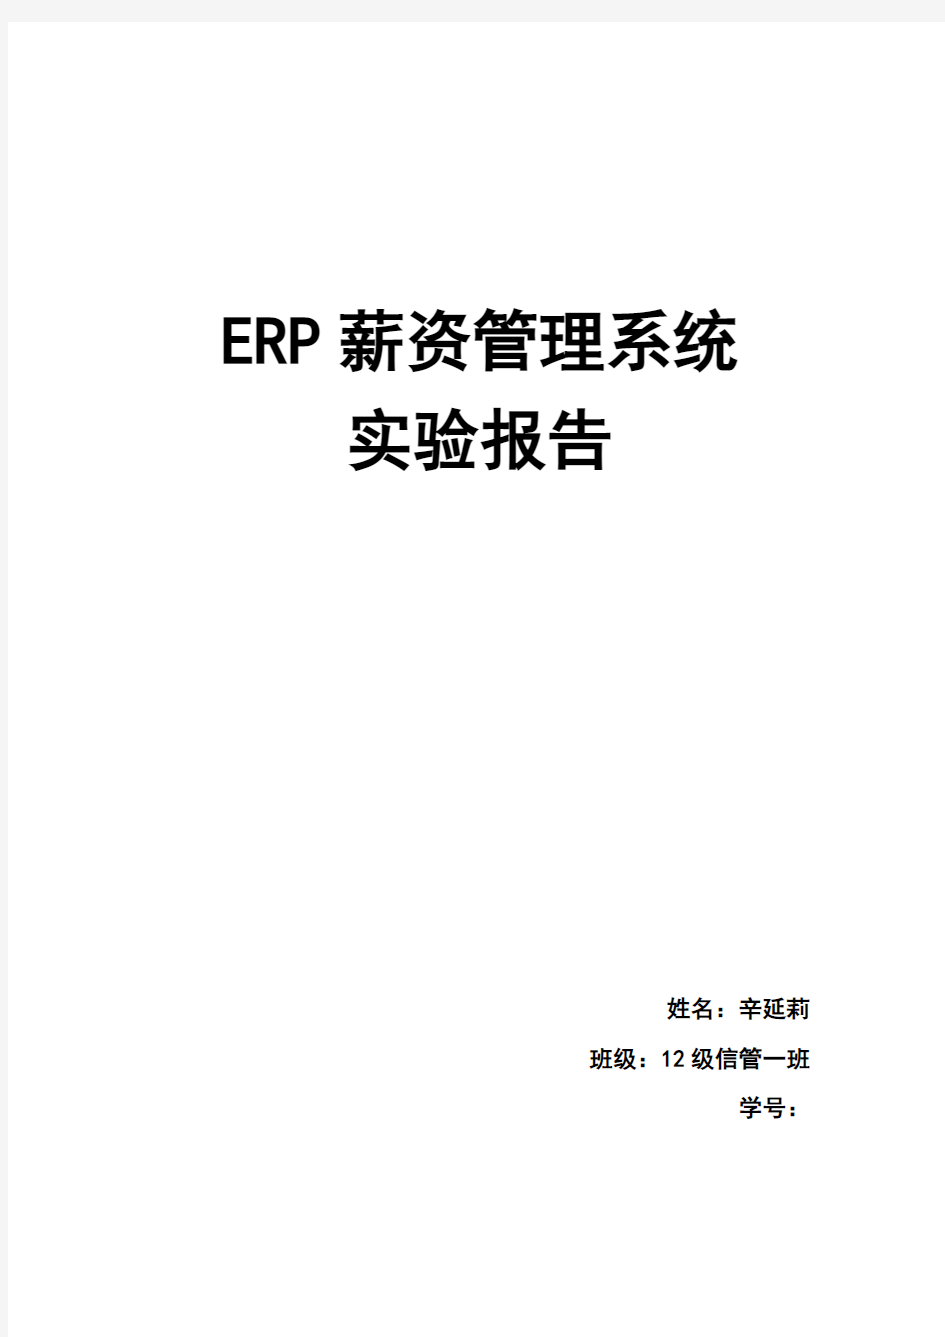 ERP薪资管理系统